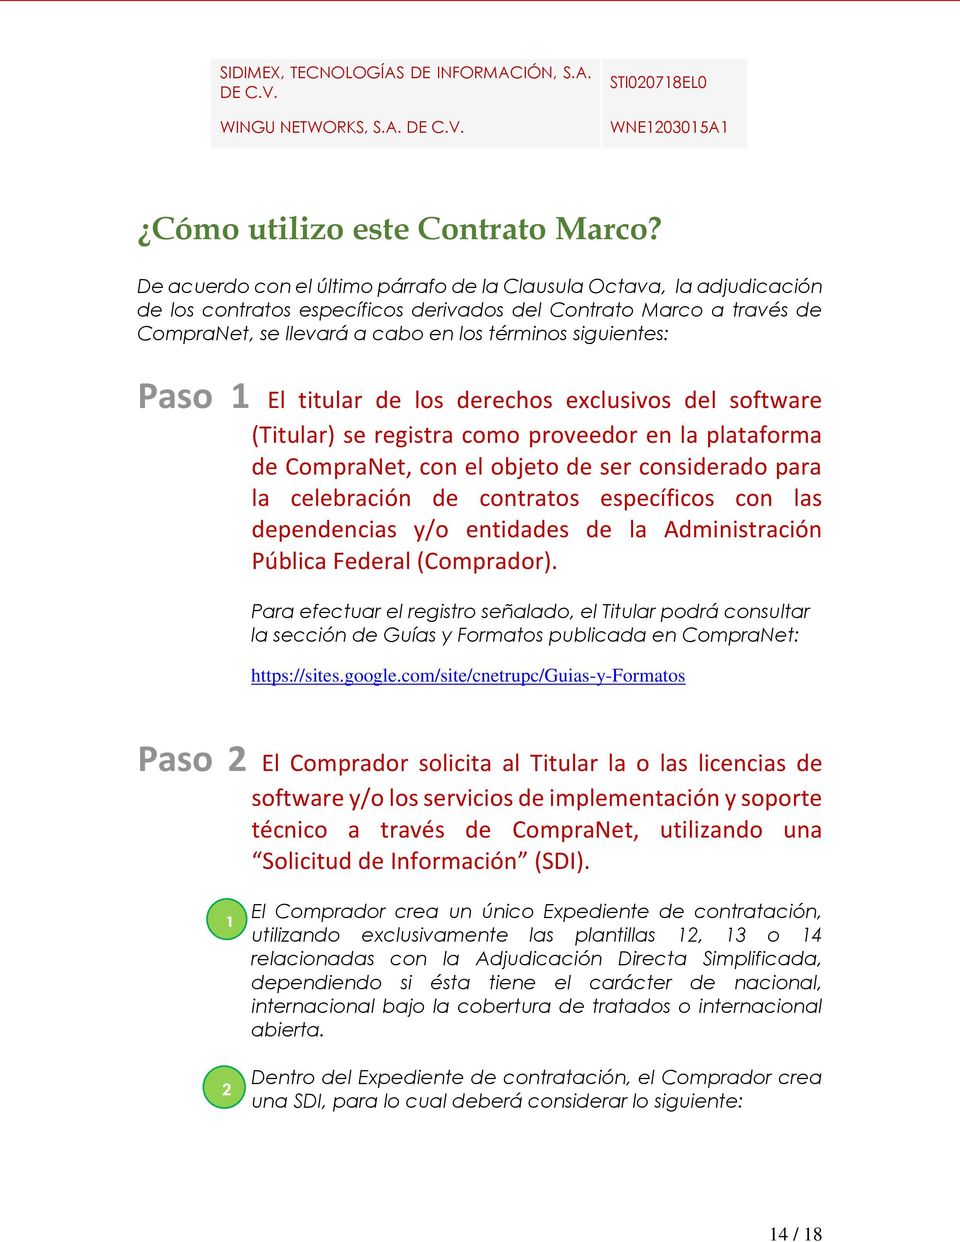 Paso 1 El titular de los derechos exclusivos del software (Titular) se registra como proveedor en la plataforma de CompraNet, con el objeto de ser considerado para la celebración de contratos